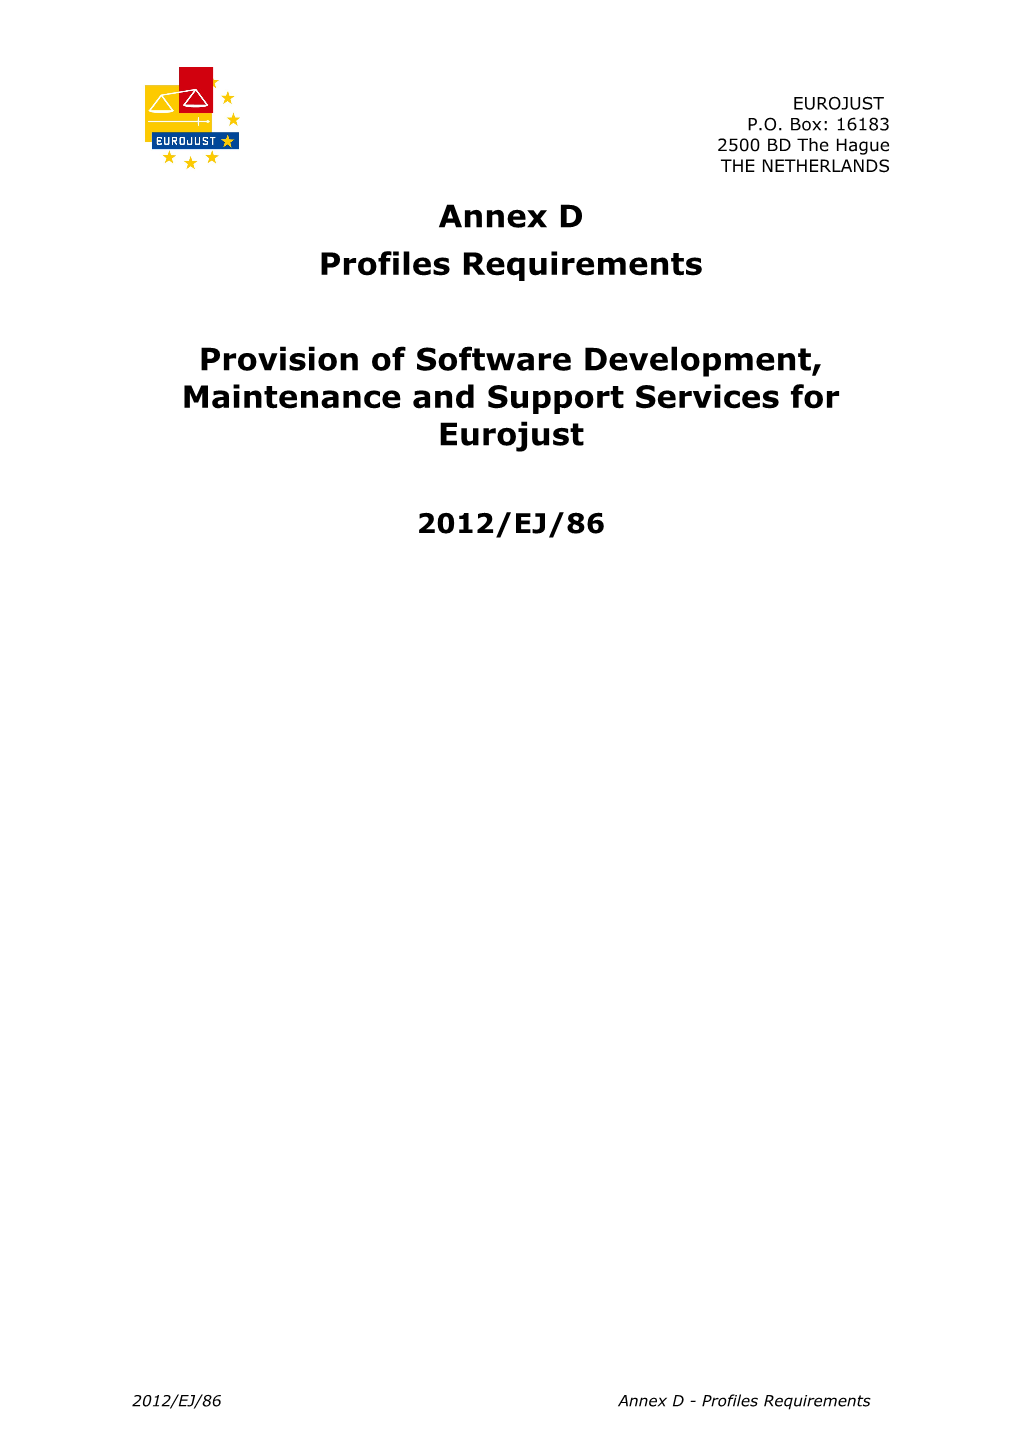 Annex D - Profile Requirements